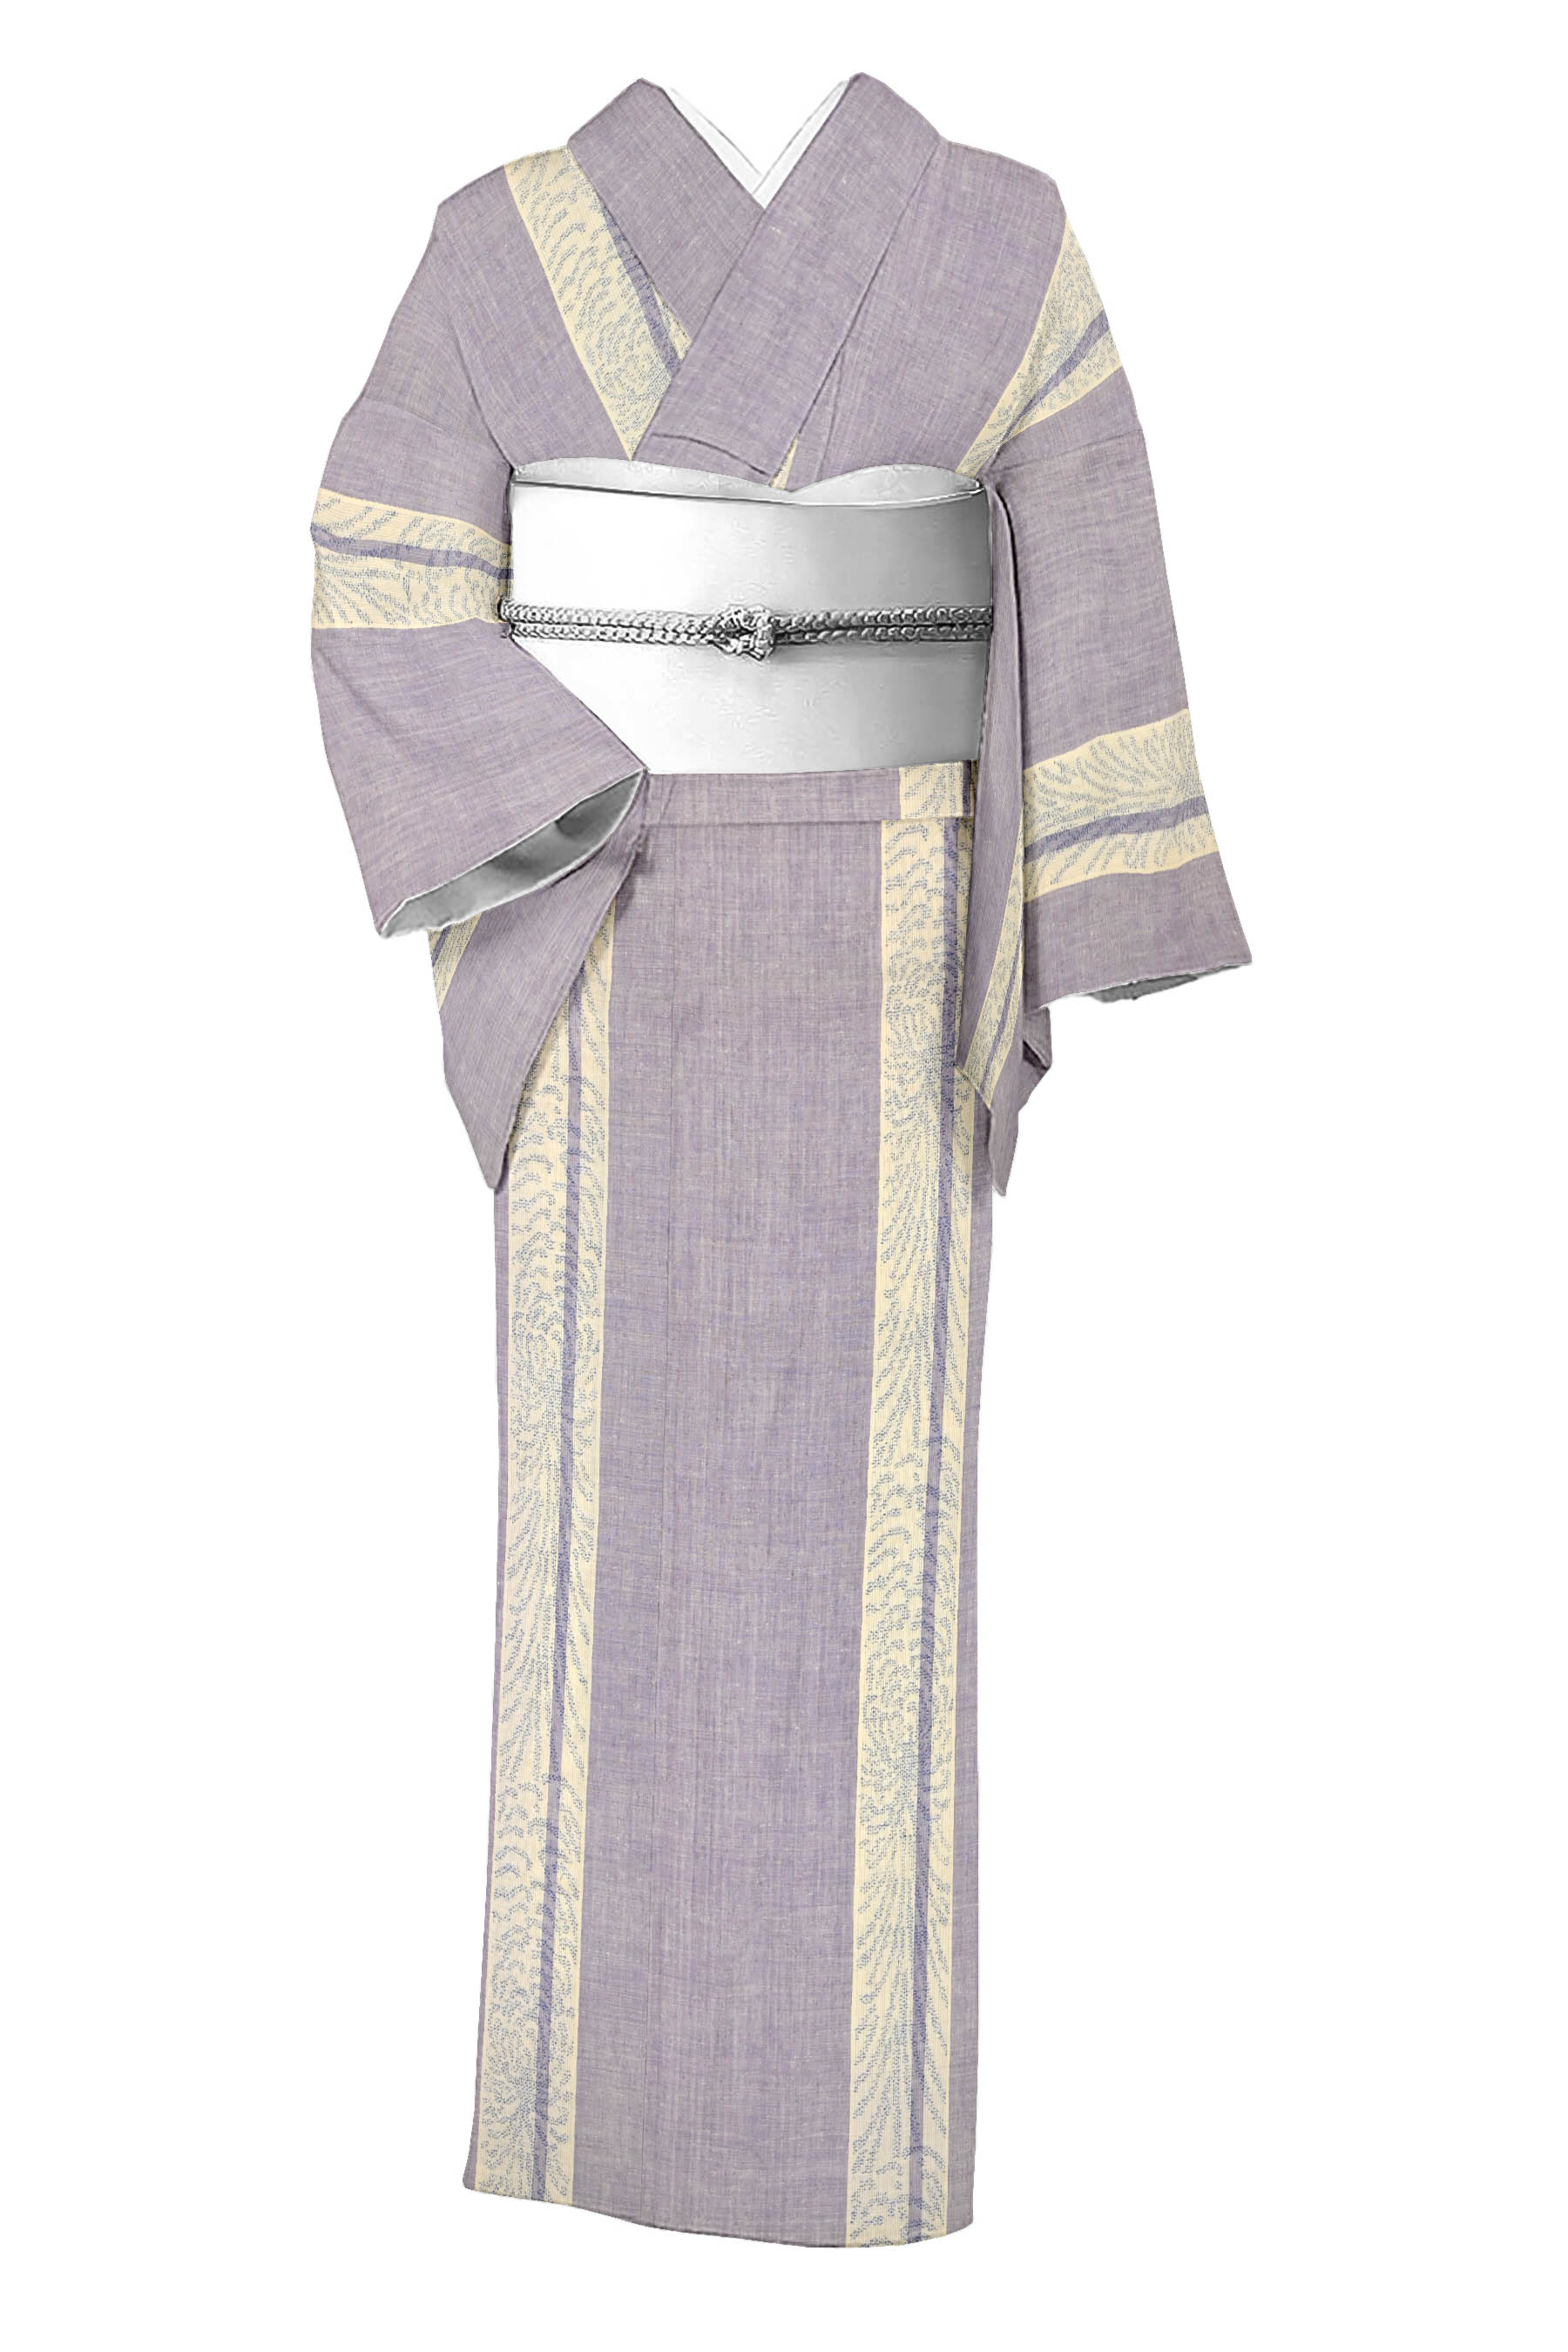 本場結城紬 極濃い紫 しつけ付き 真綿紬 - 着物